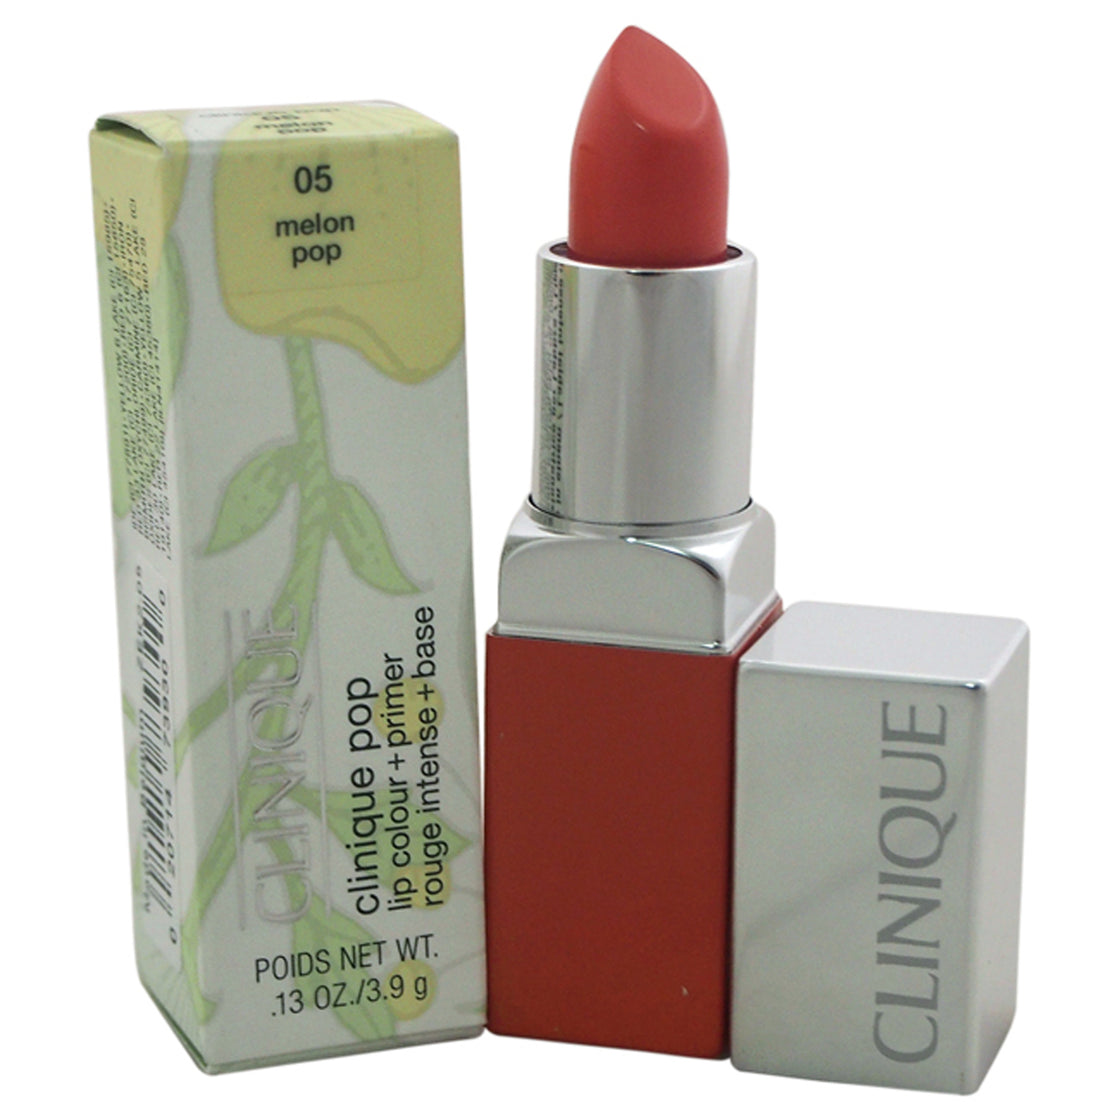 Clinique Pop Lip Colour + Primer - 05 Melon Pop by Clinique for Women - 0.13 oz Lipstick